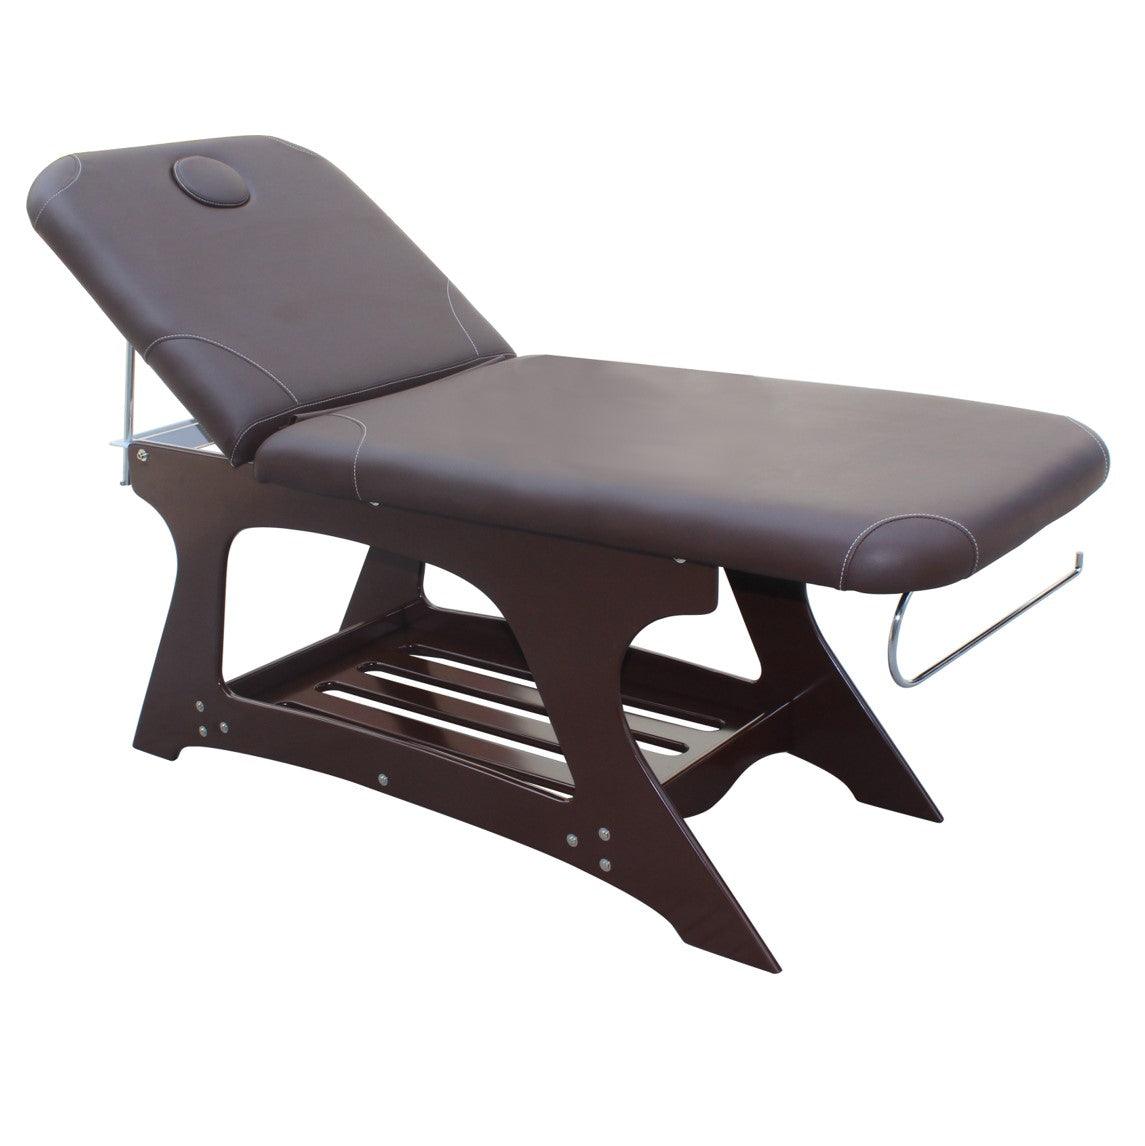 SPARELAX' Lettino da massaggio stazionario in legno – Wellness Bazaar